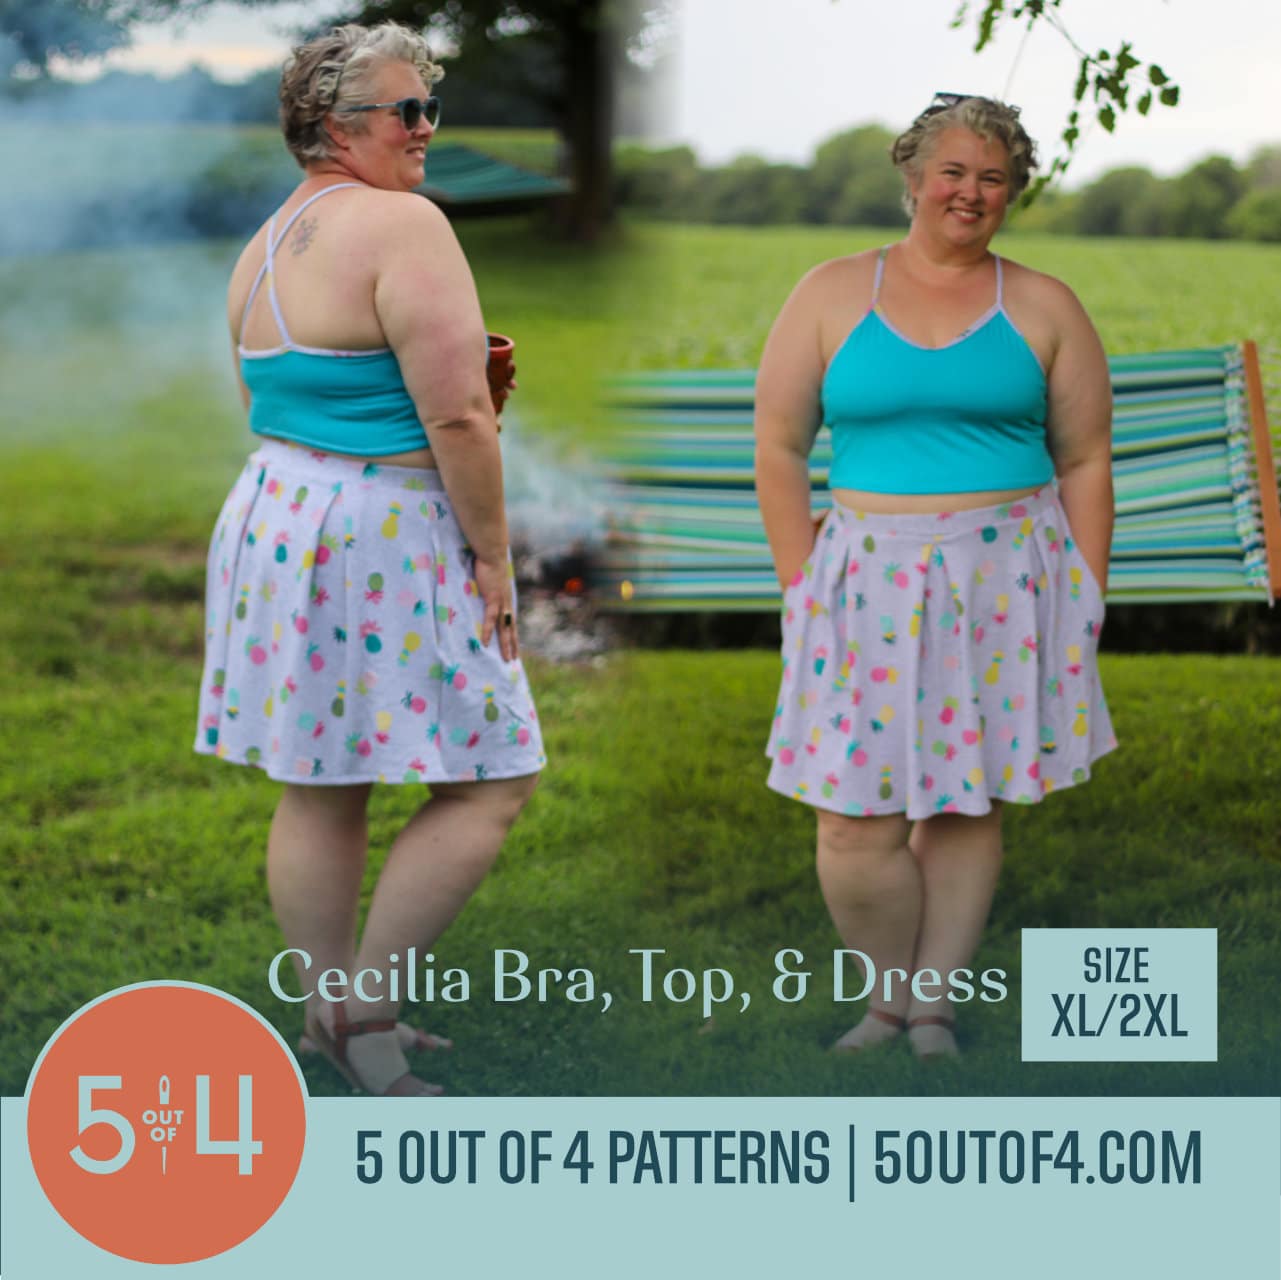 https://5outof4.com/wp-content/uploads/2020/08/Cecilia-Bra-Top-Dress-size-xl-2xl-crop.jpg